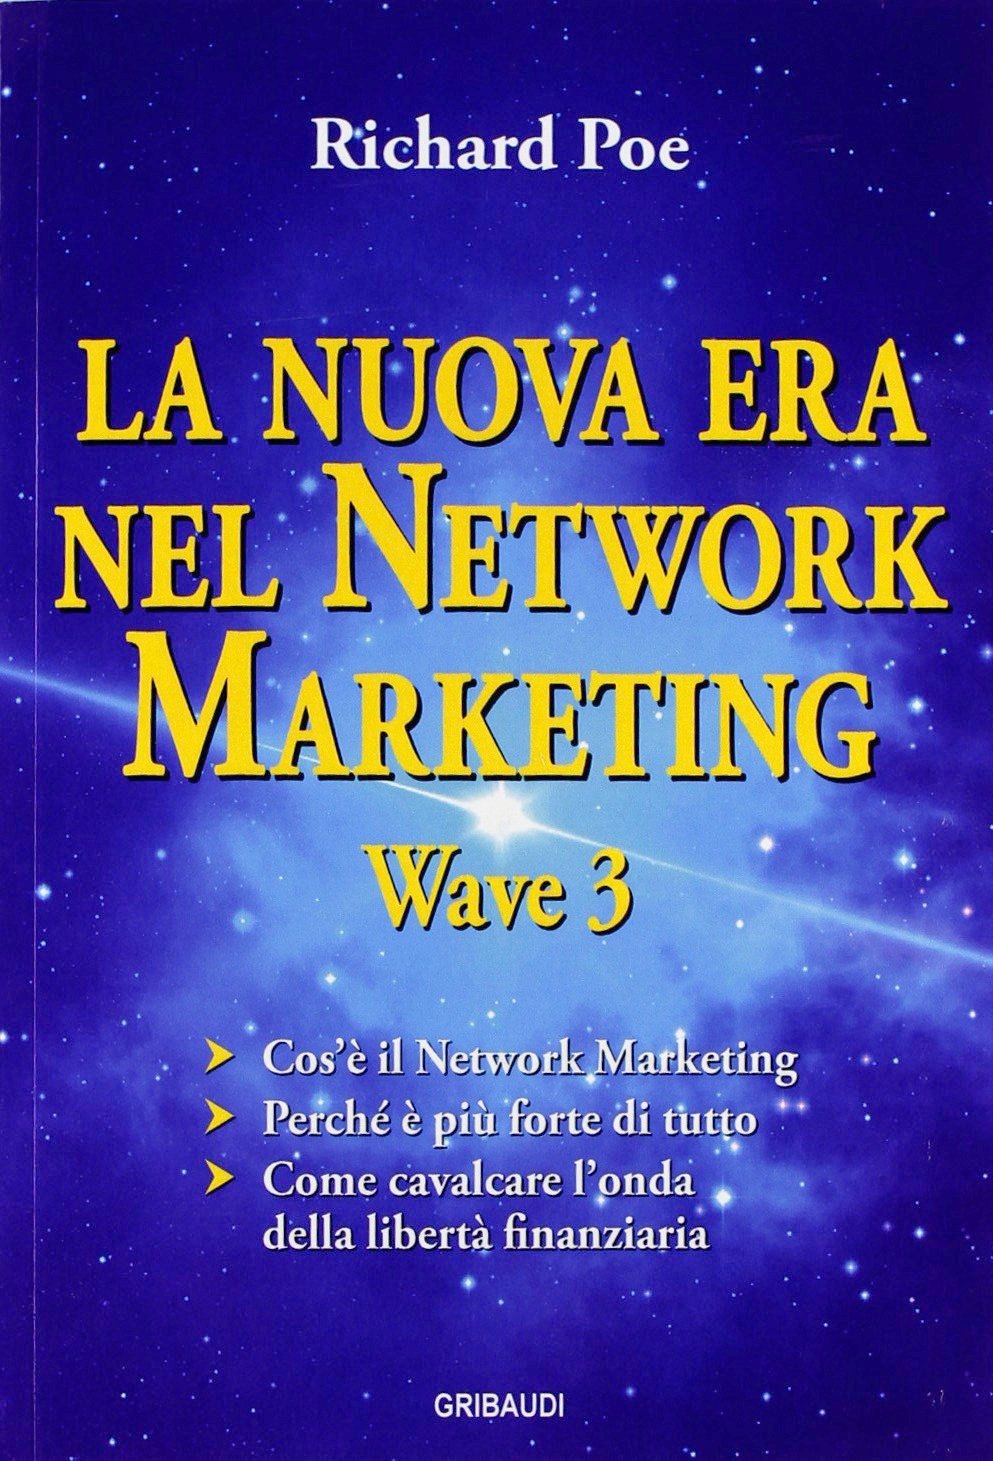 Richard Poe - La nuova era nel network marketing - Wave 3 - Clicca l'immagine per chiudere